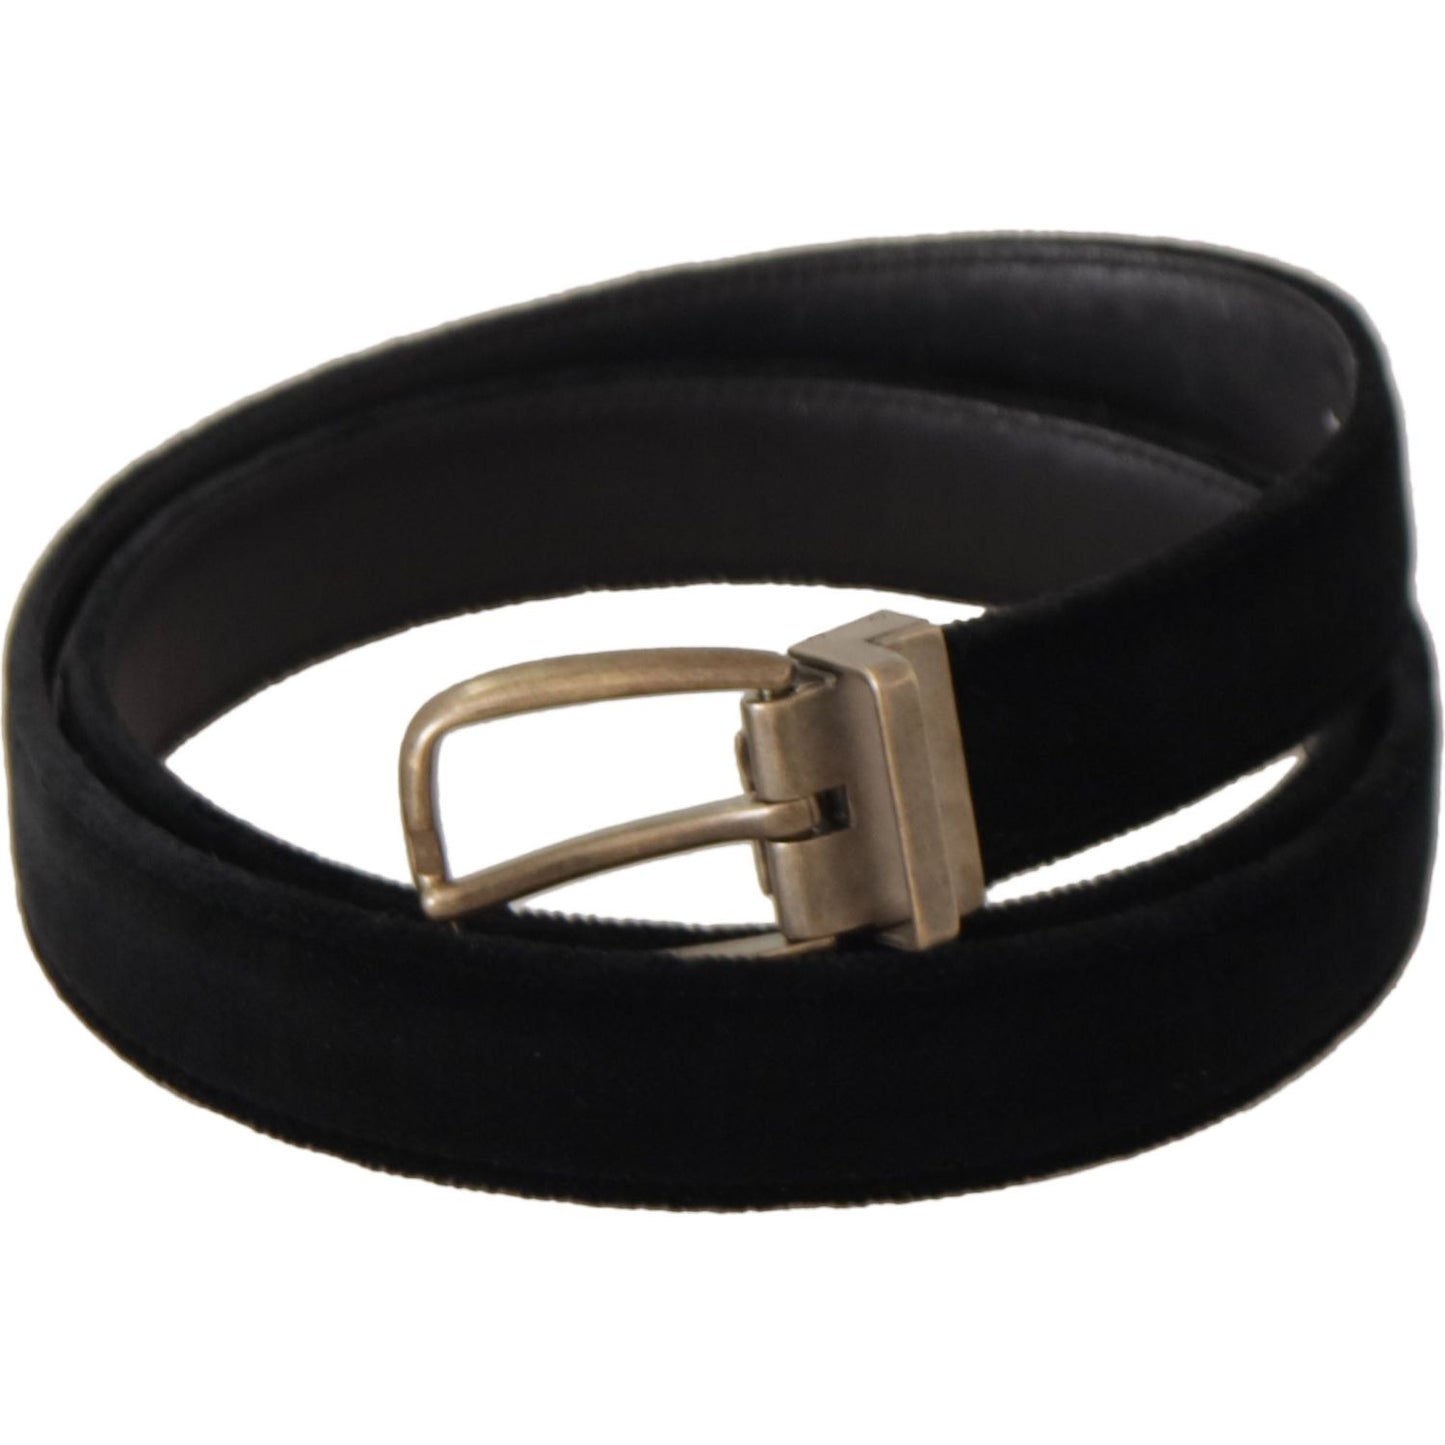 Elegant Black Leather Designer Belt Dolce & Gabbana